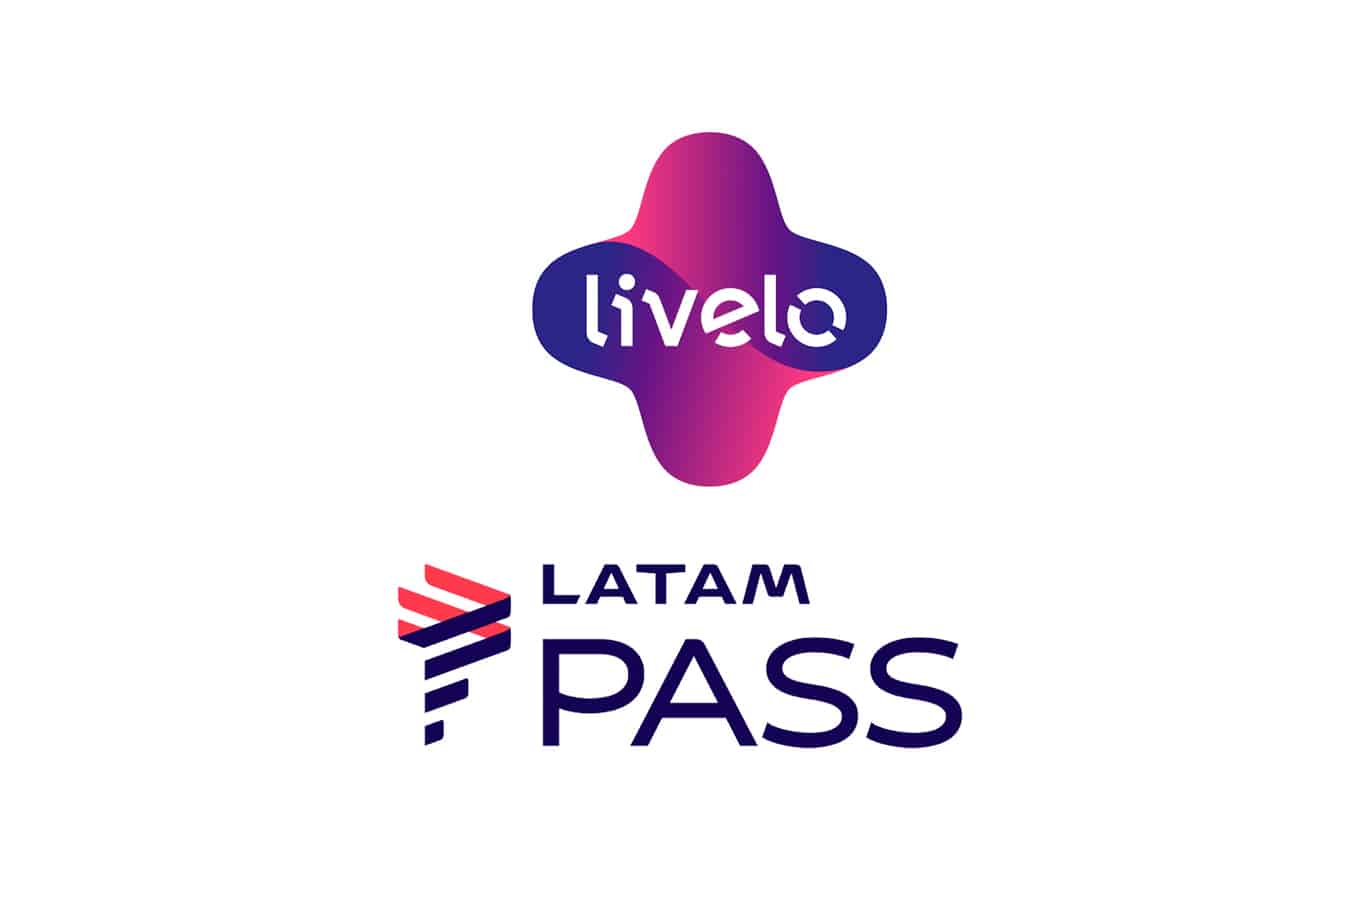 Nova campanha bumerangue entre Livelo e LATAM Pass